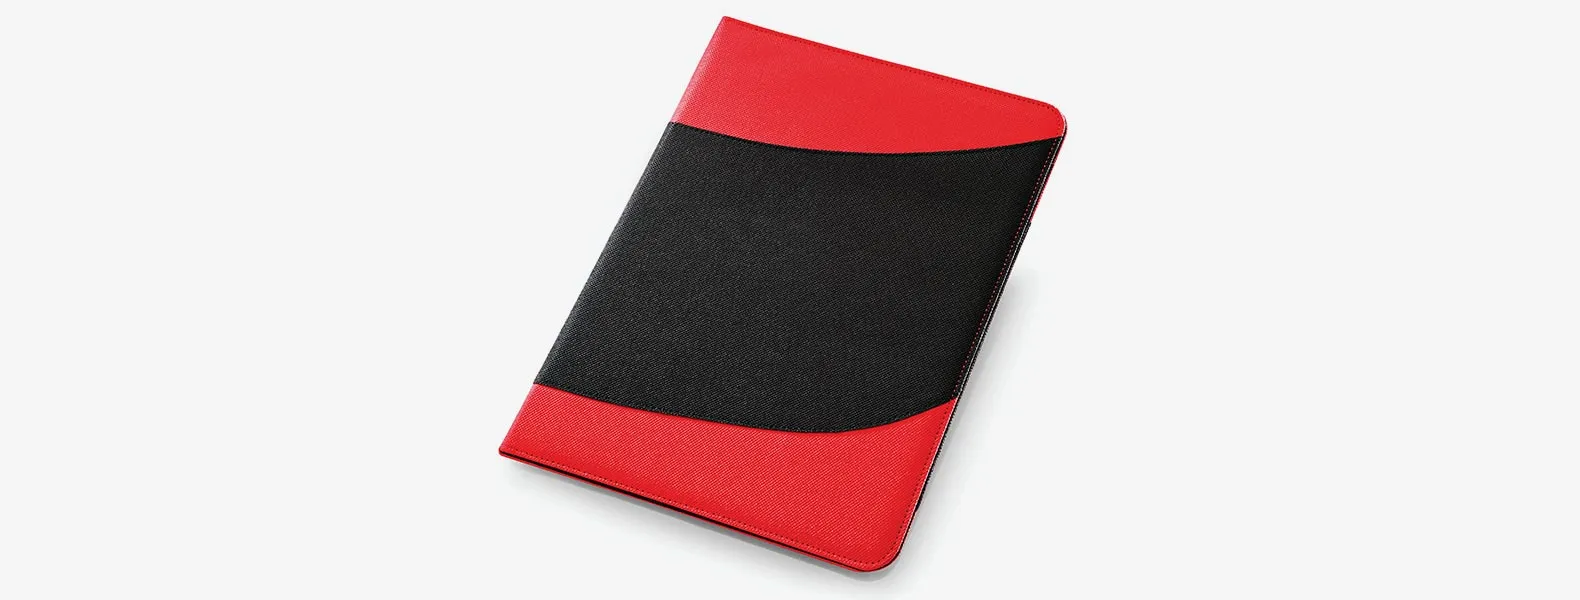 Confeccionada em polyester preto e vermelho com um bloco de 30 folhas pautadas. É formada por uma estrutura rígida, com acabamento em costura e toque almofadado. Conta com uma aba para papéis, um compartimento para caneta, um para o bloco de anotações e outro com visor em plástico PVC transparente.